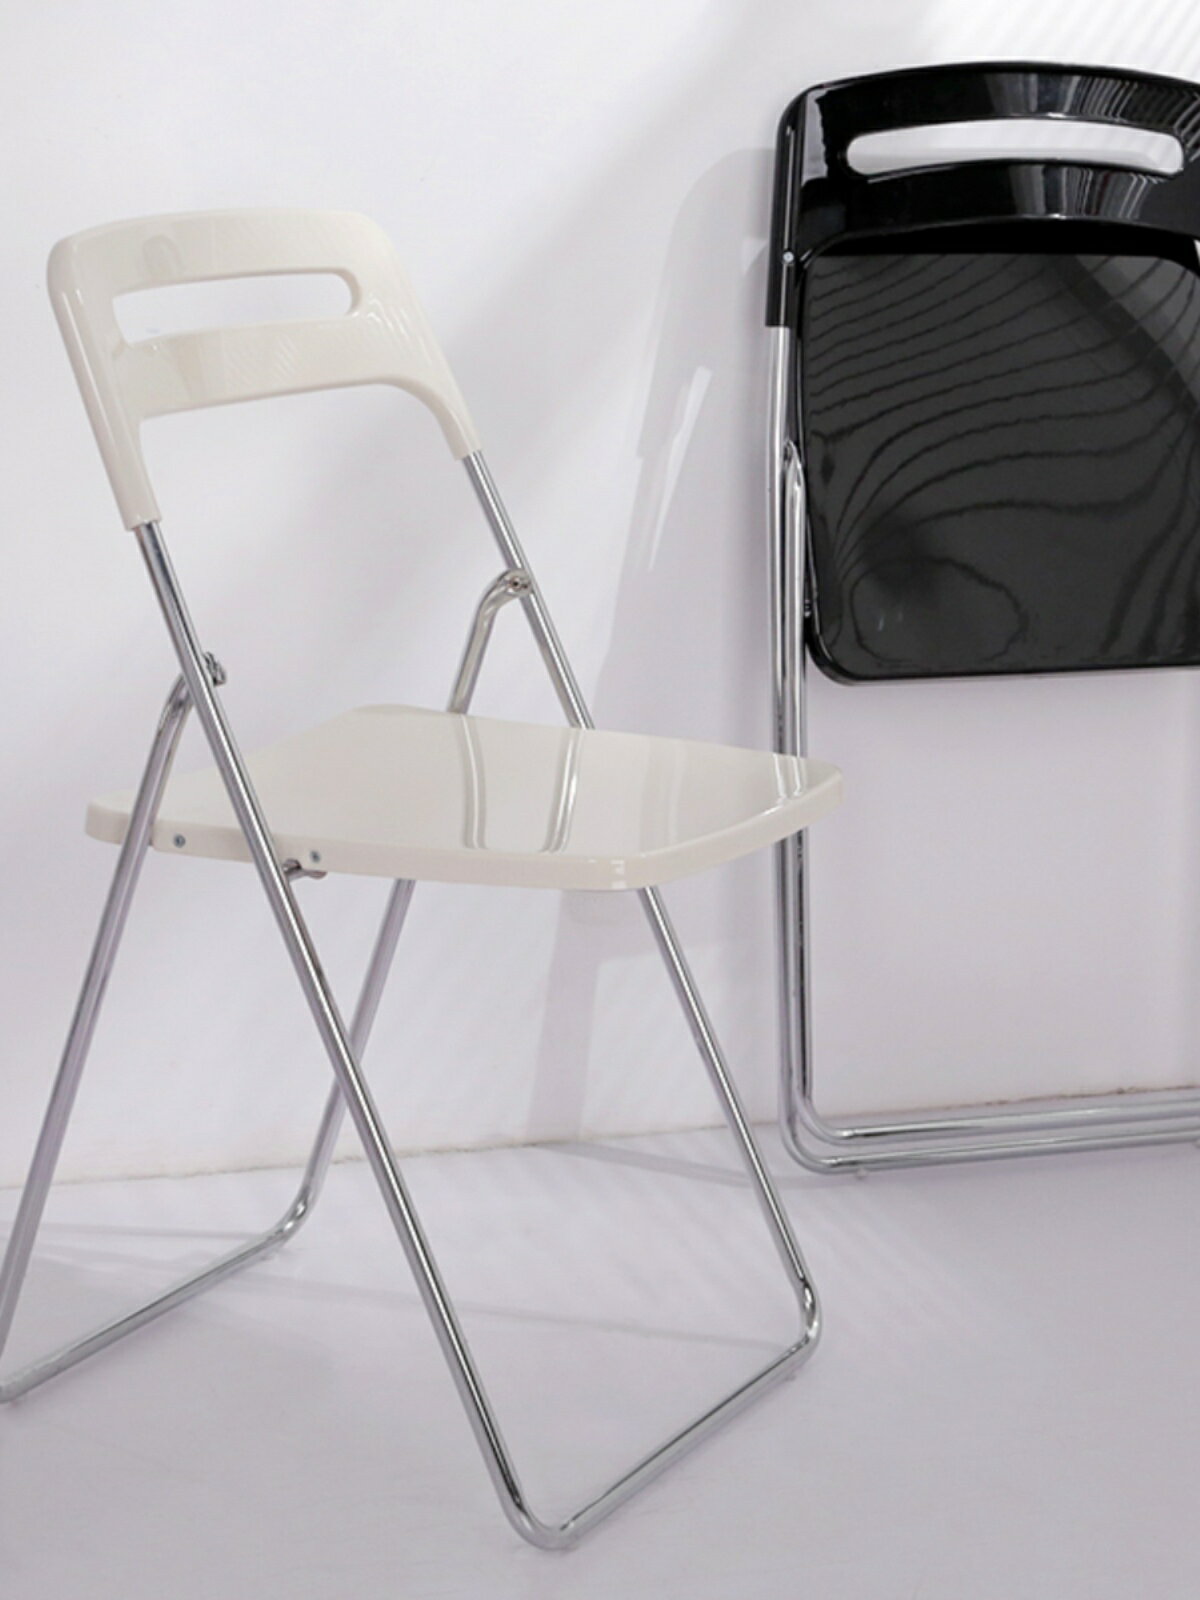 凳家用椅子 化妝椅拍照椅便攜家用折疊椅亞克力餐椅透明椅子